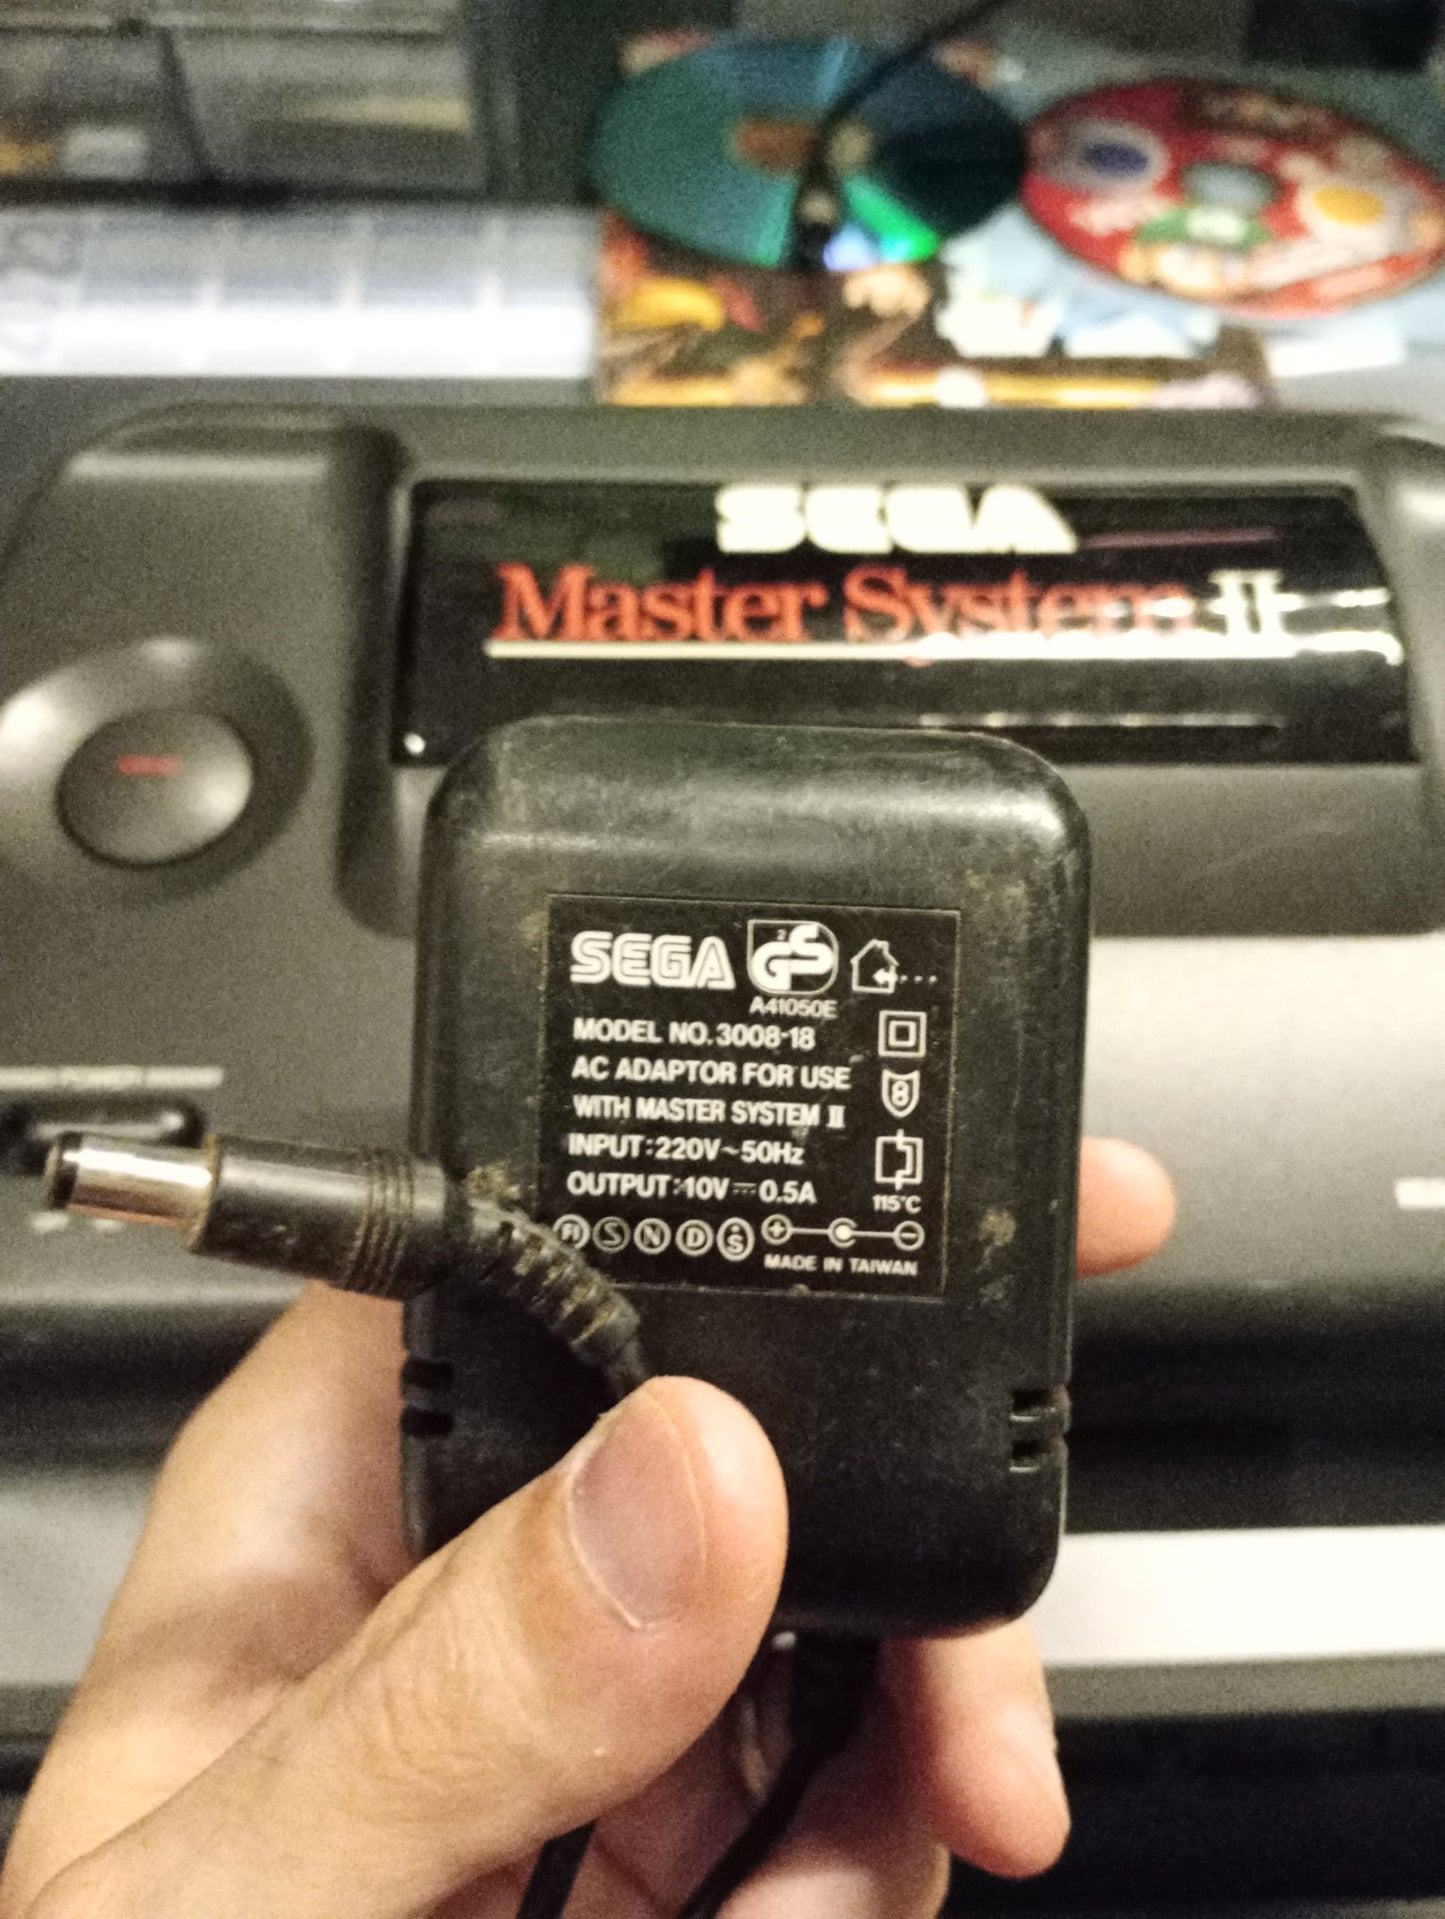 Sega Master System II + Alex Kidd